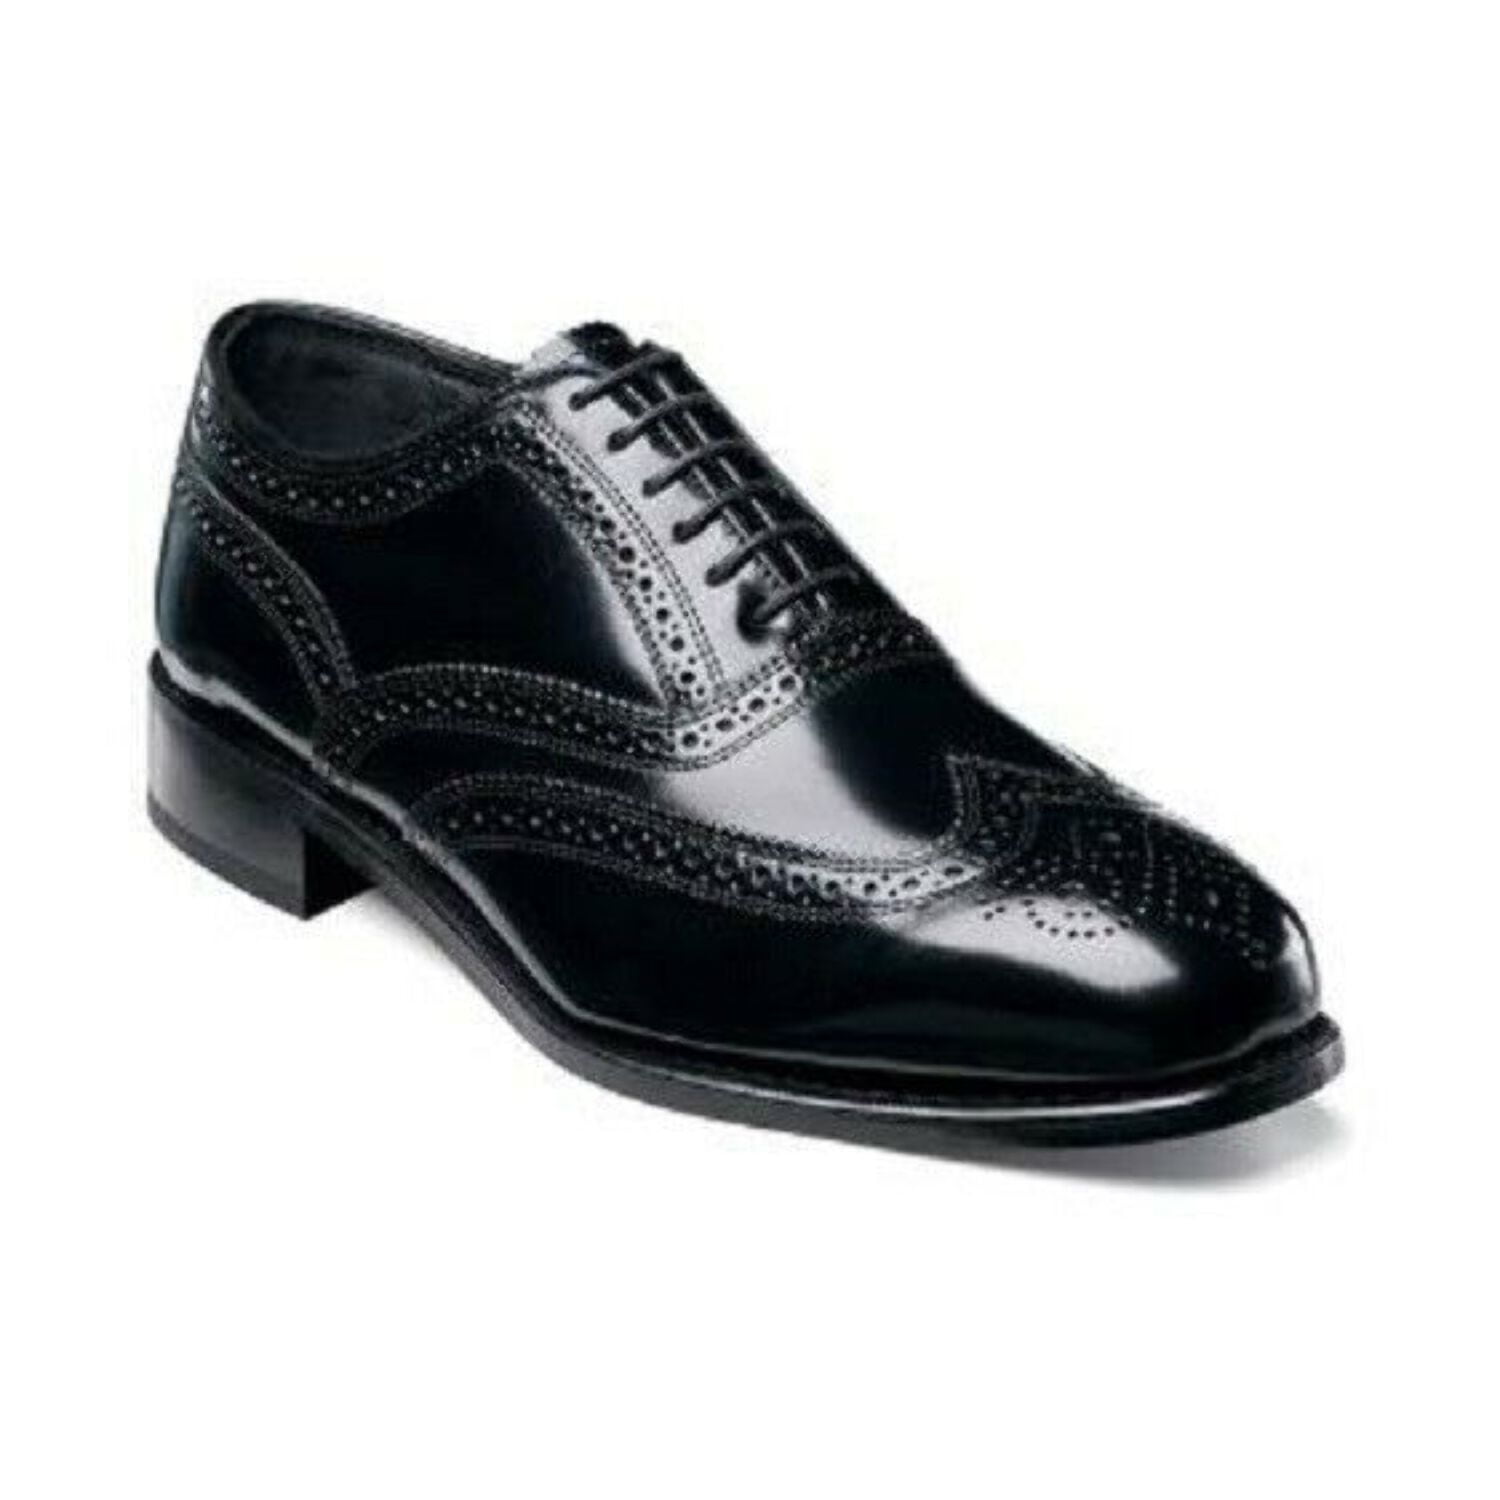 Florsheim Men's Lexington leather Wing Tip Black Shoes 17066-01 